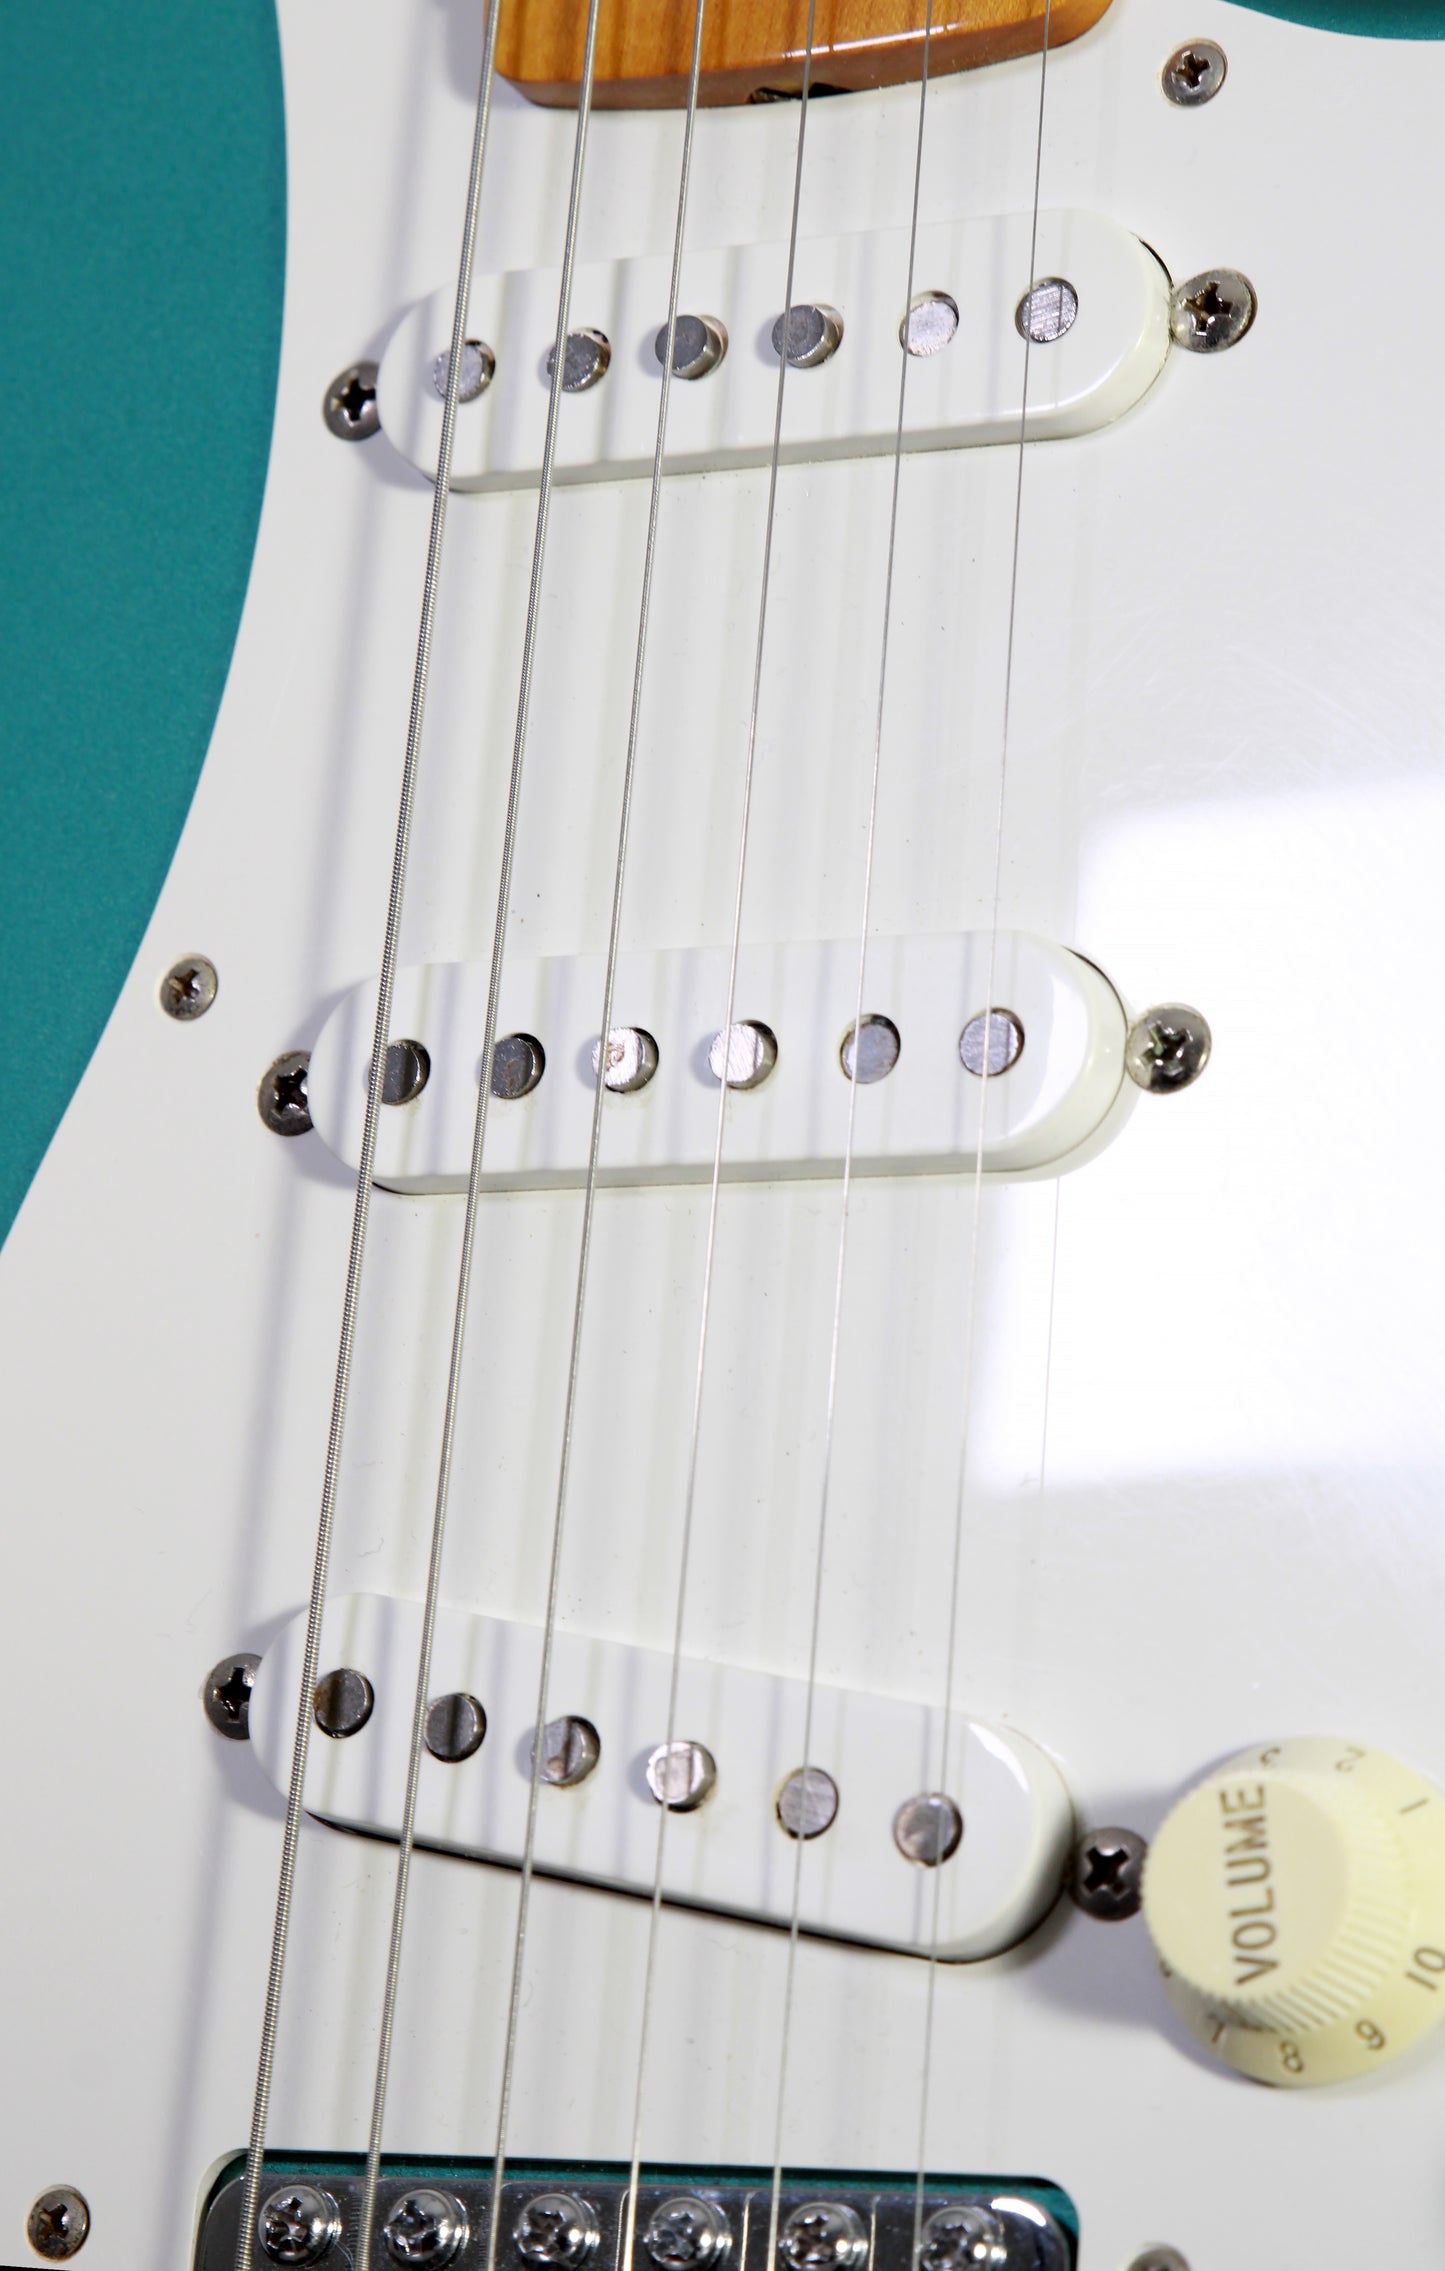 Fender Japan Stratocaster ST-57 Ocean Turquoise